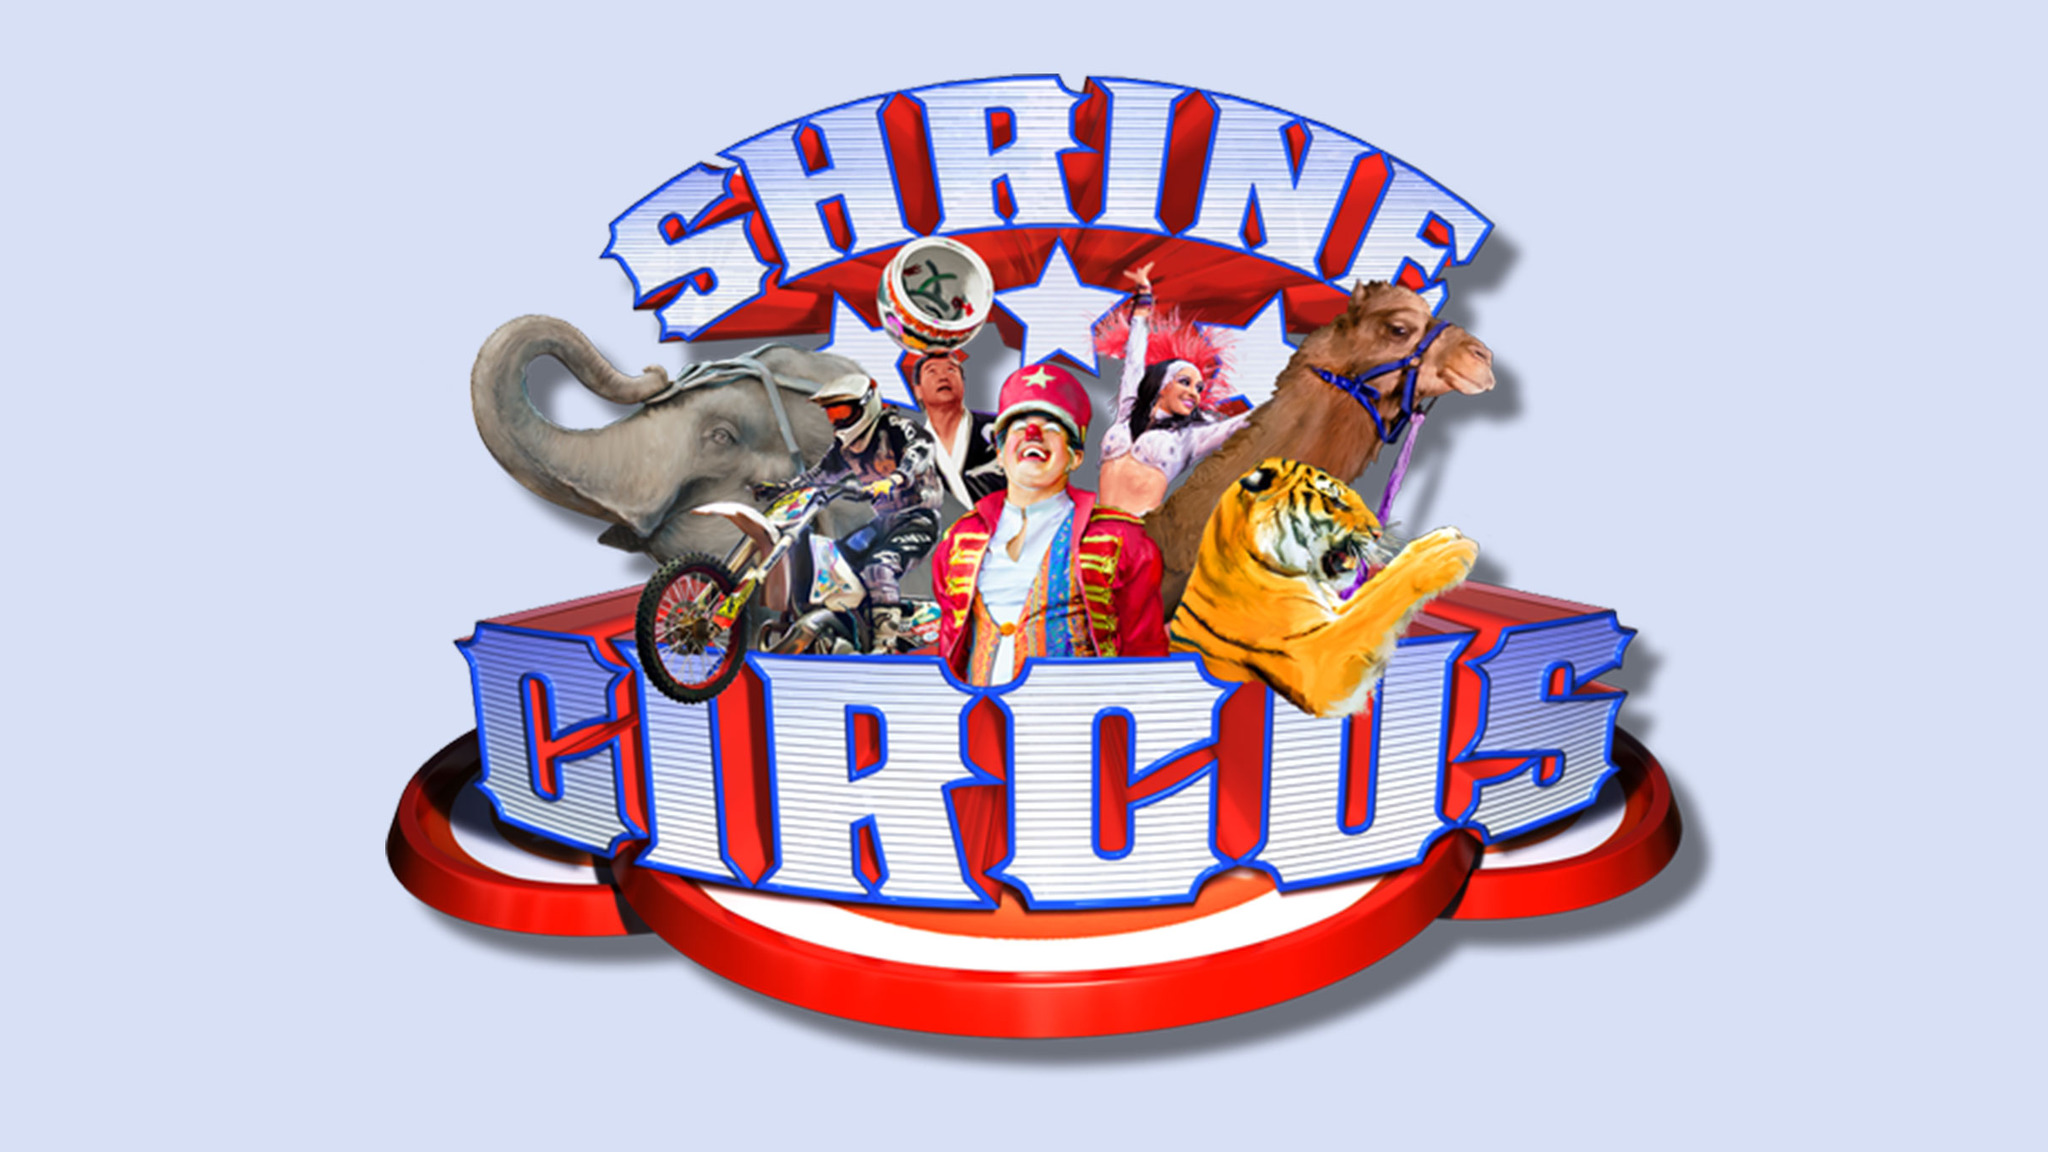 Anah shrine circus